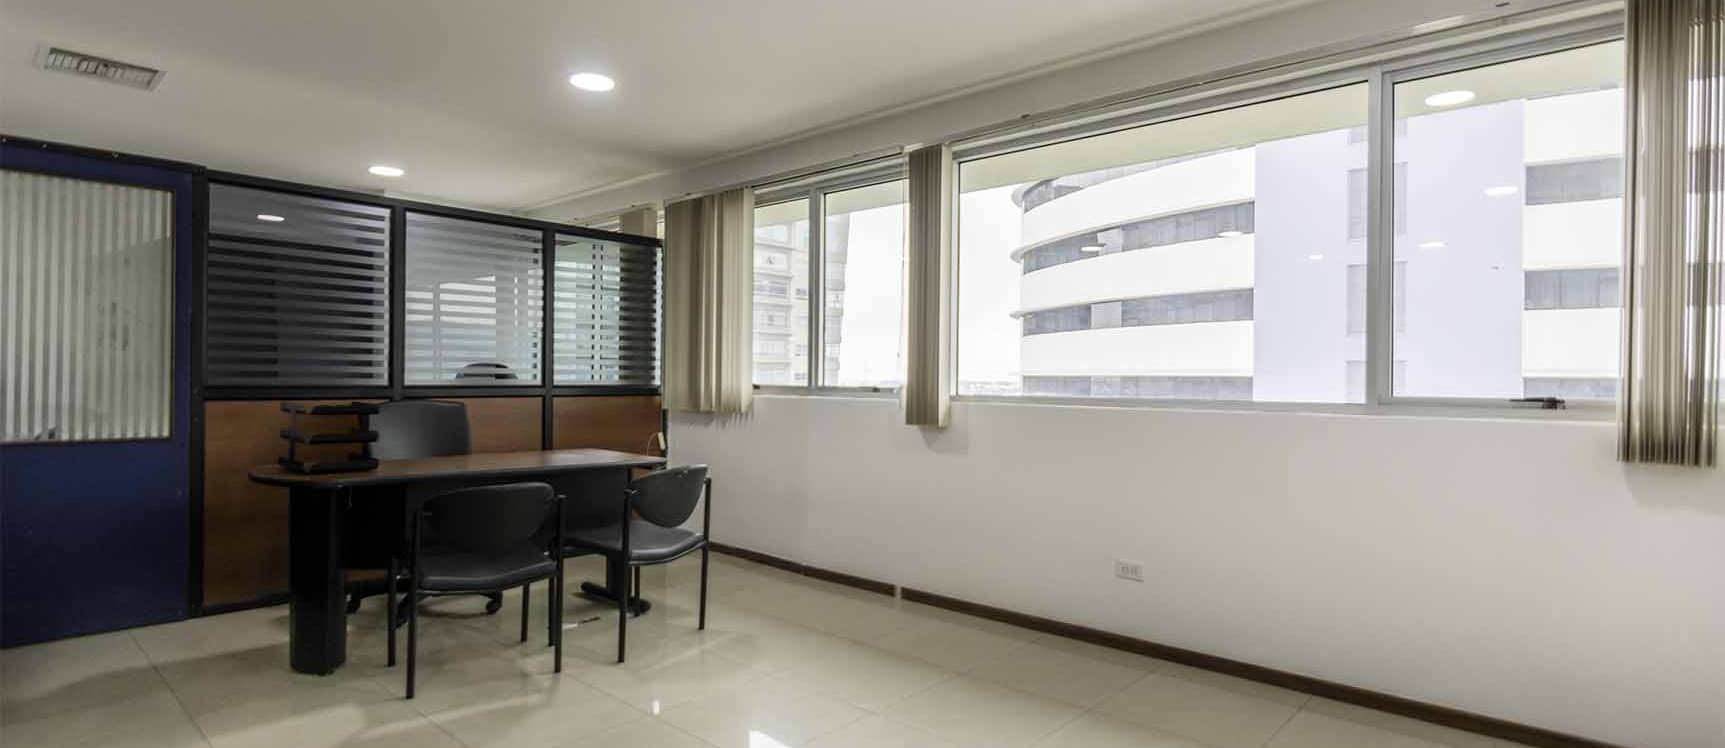 GeoBienes - Oficina en alquiler Edificio Trade Building , Norte de Guayaquil  - Plusvalia Guayaquil Casas de venta y alquiler Inmobiliaria Ecuador